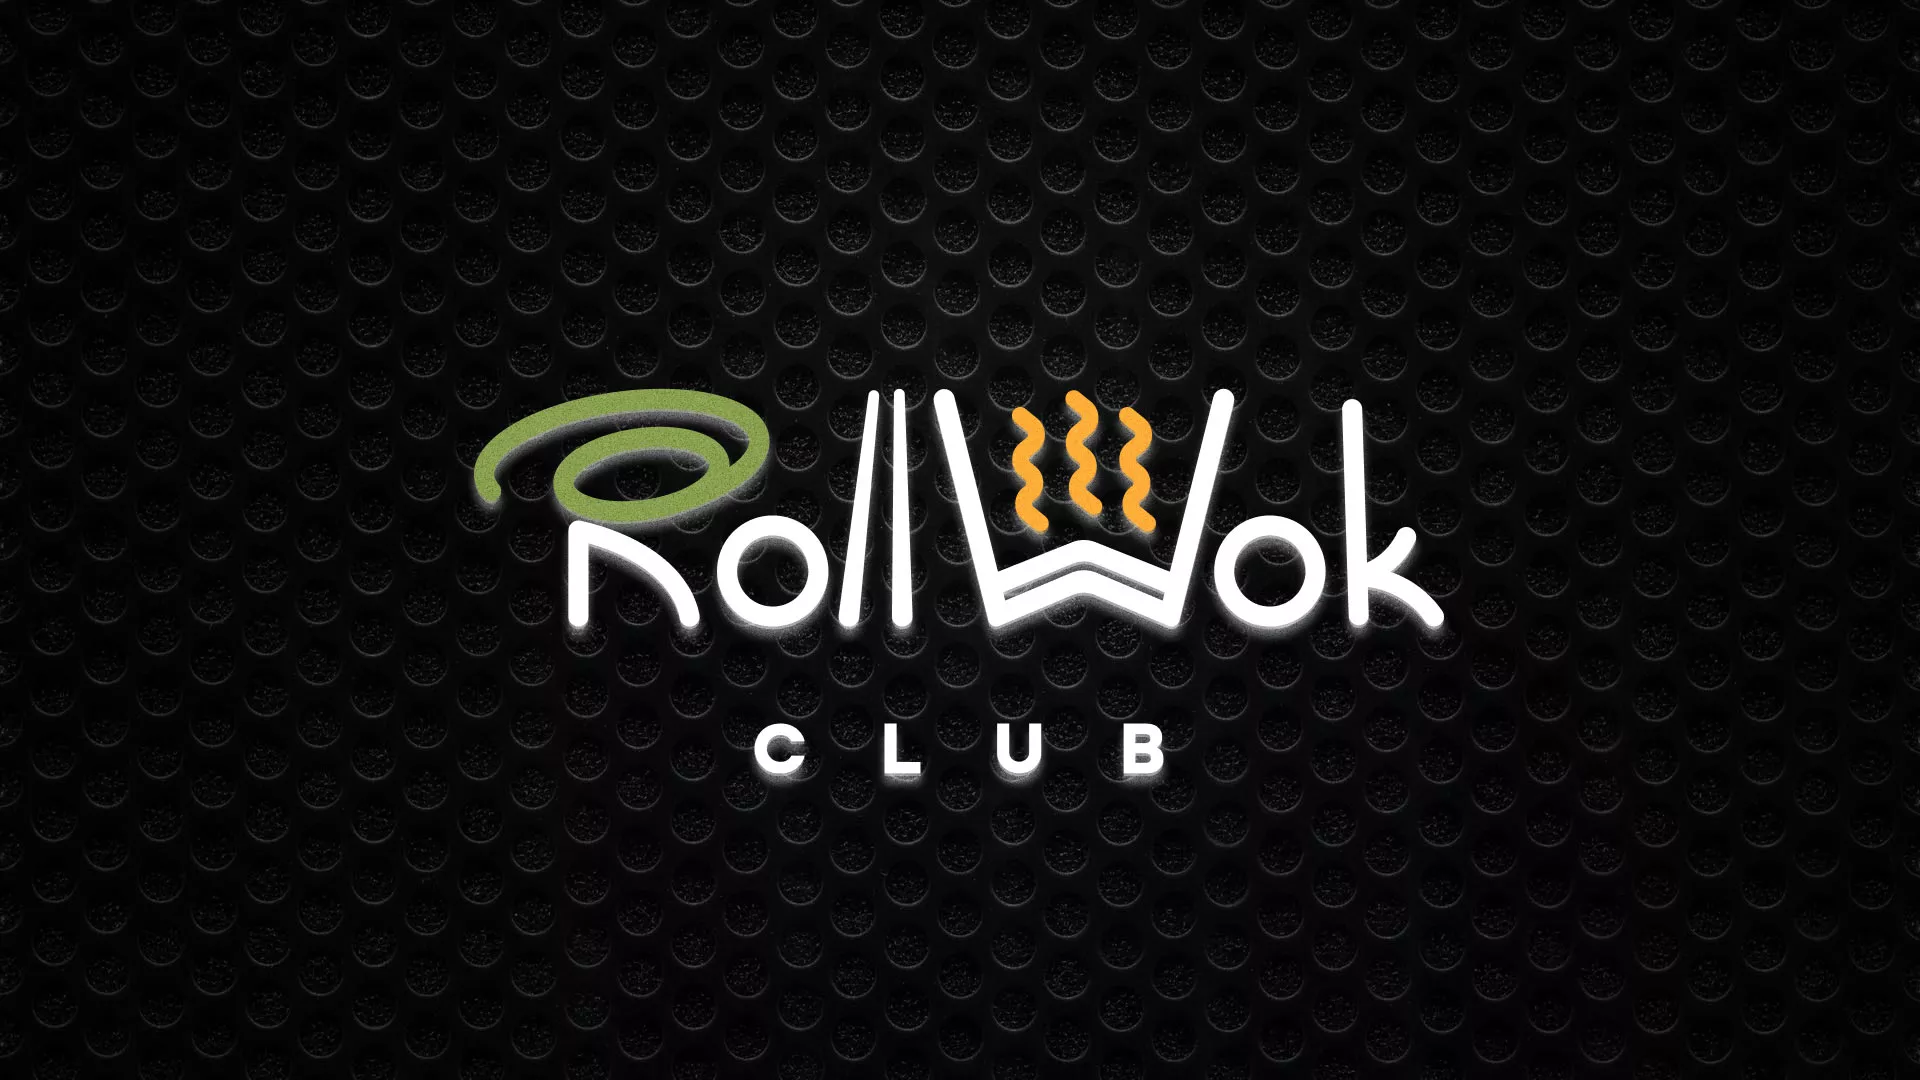 Брендирование торговых точек суши-бара «Roll Wok Club» в Новой Ладоге